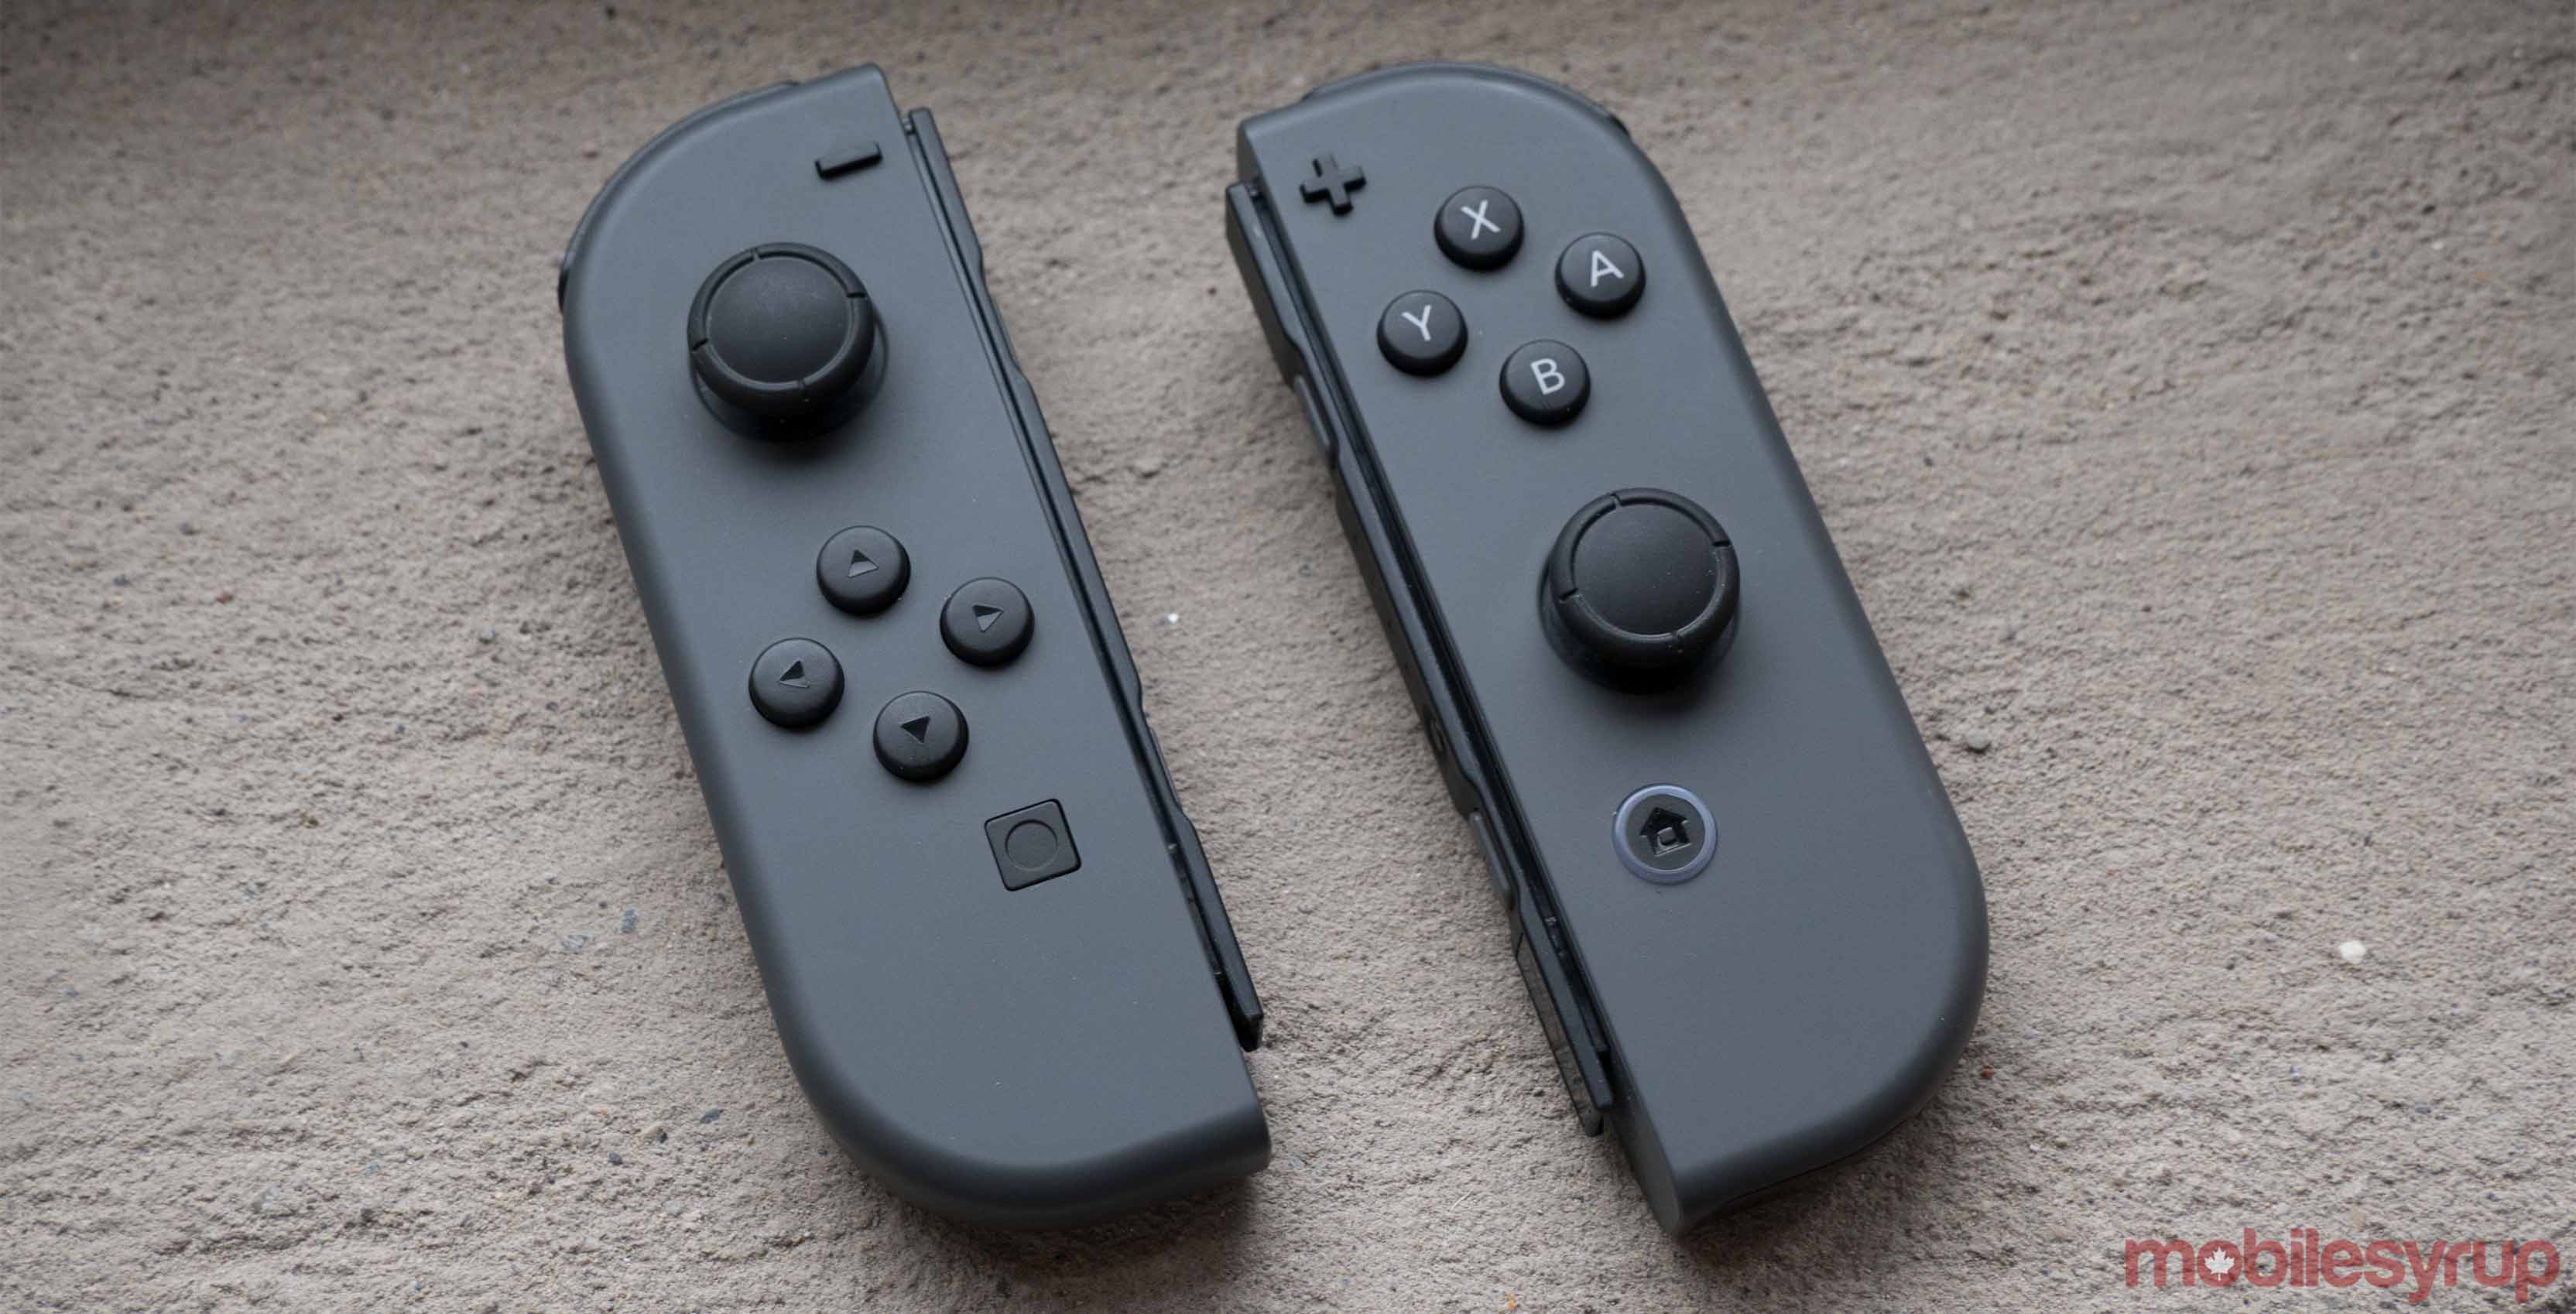 Nintendo Switch Joy-con controller